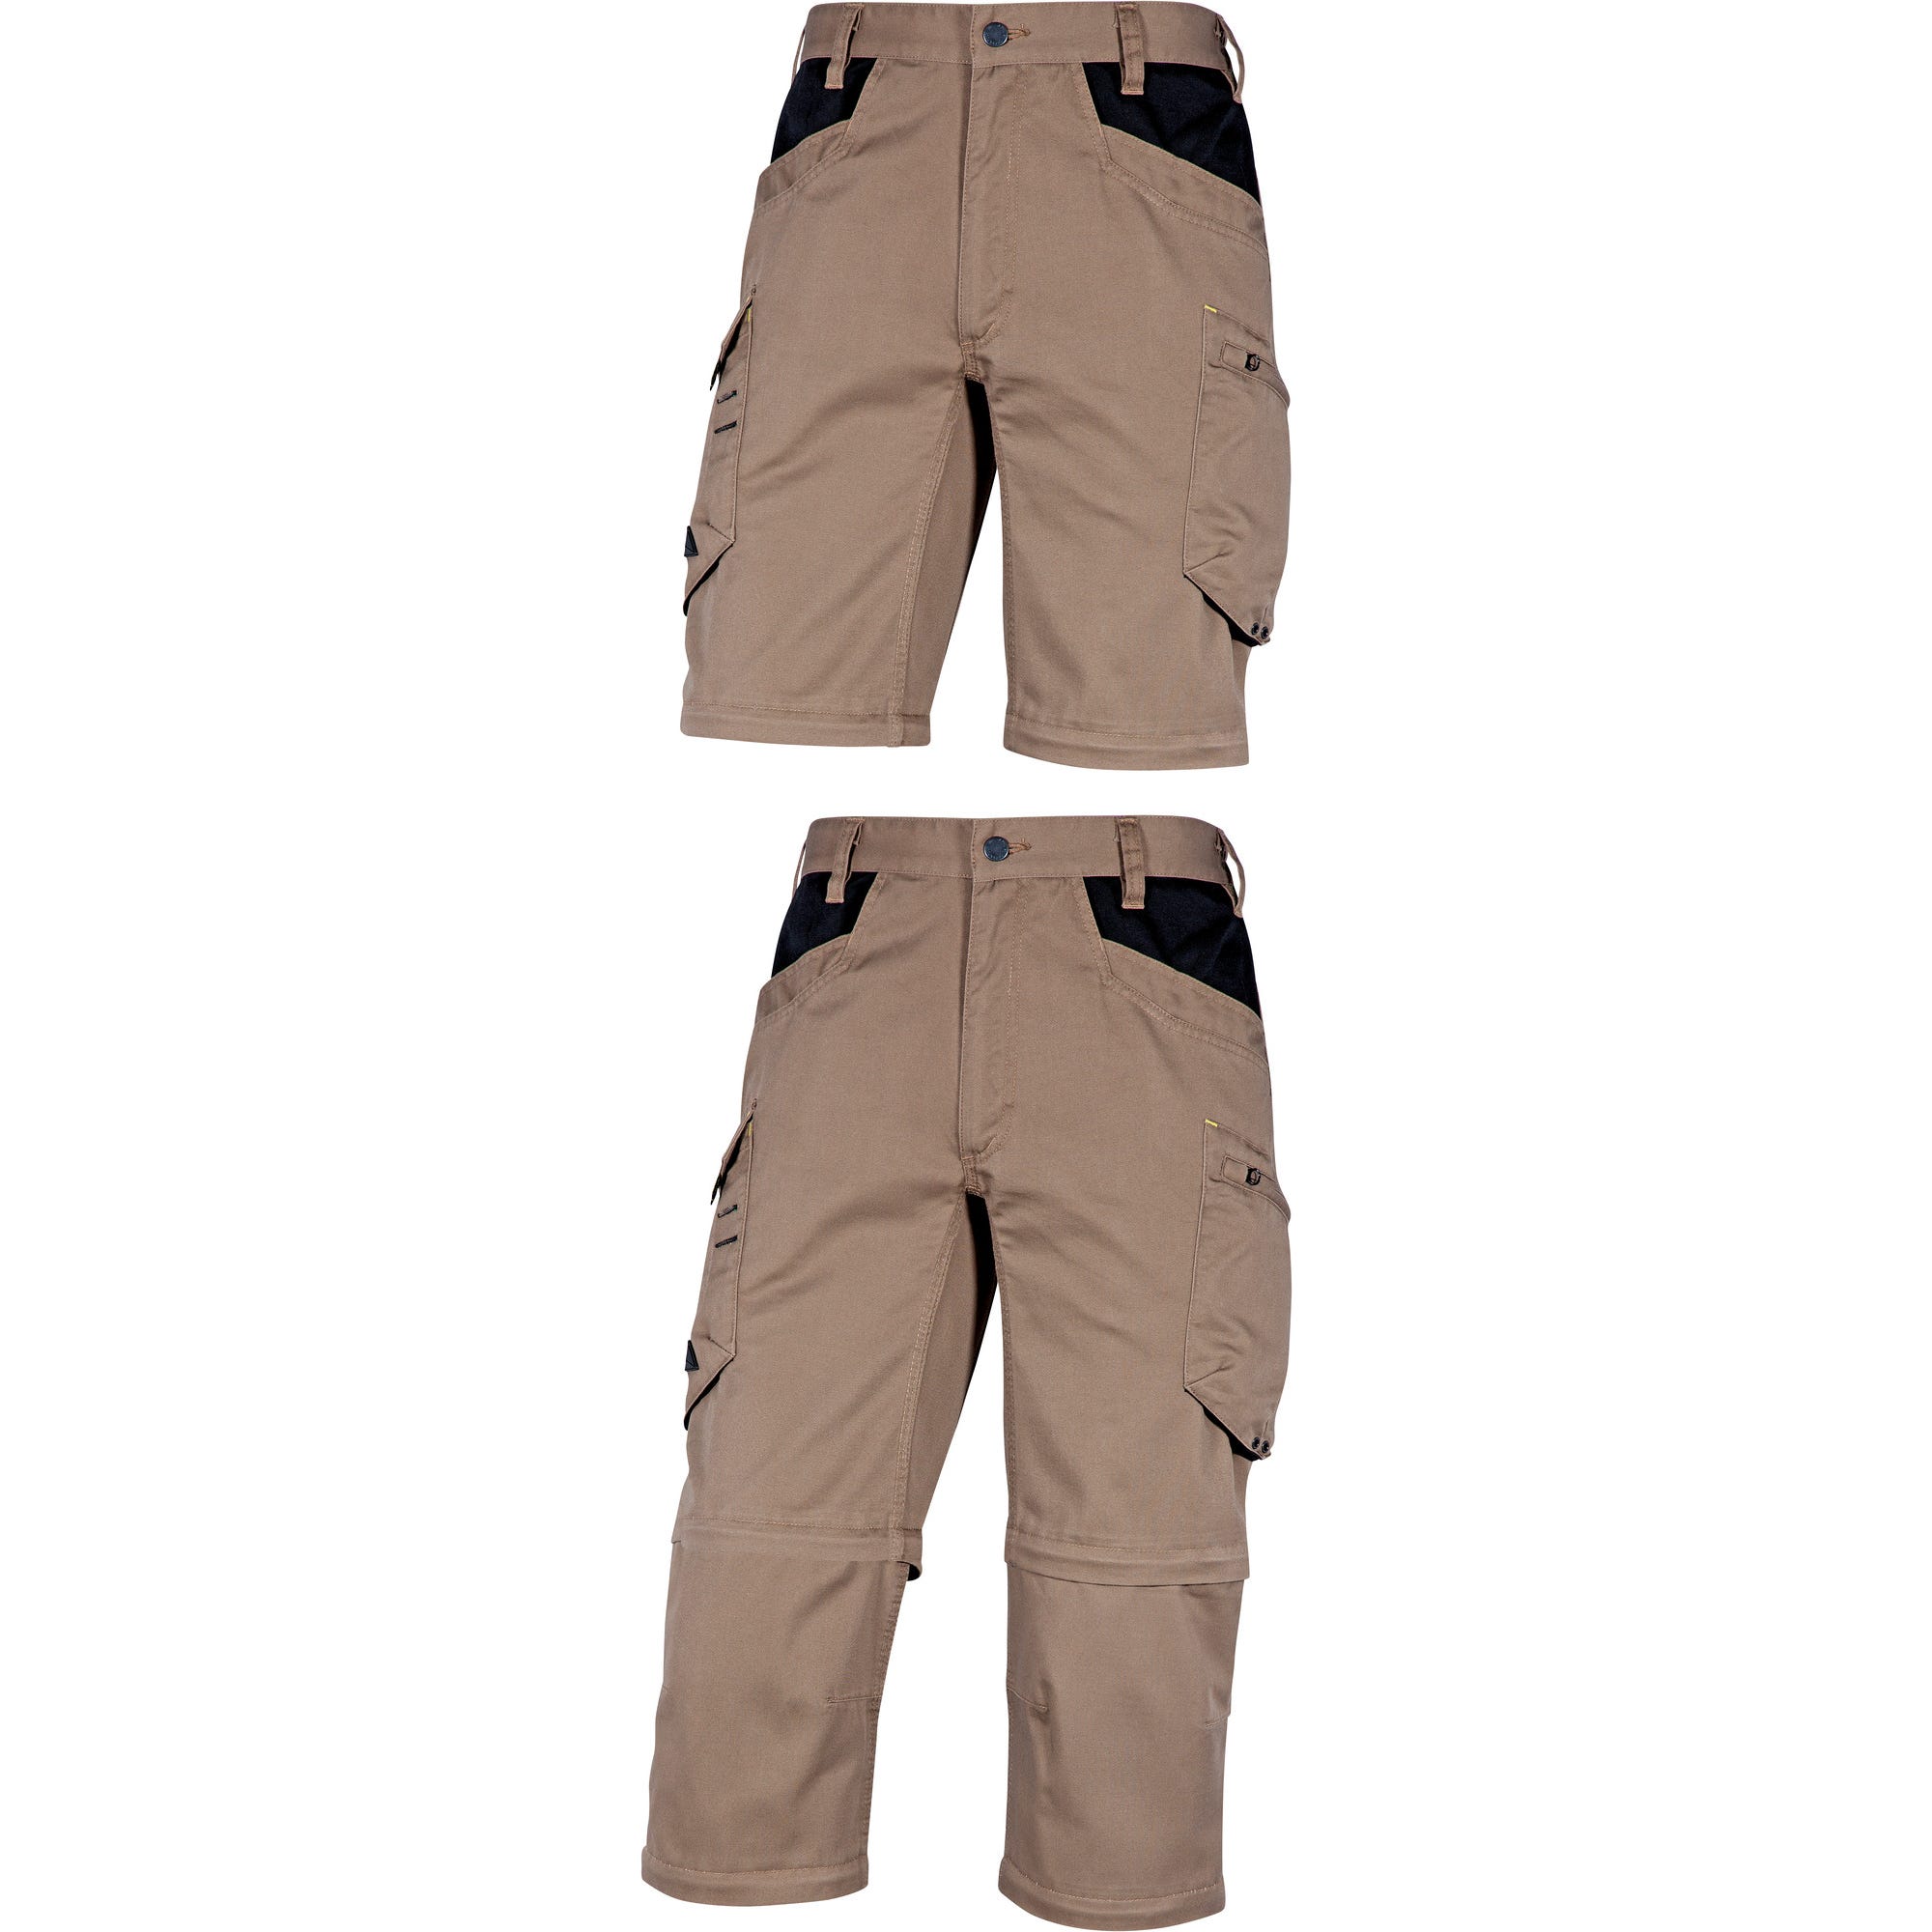 Pantalon de travail beige T.XL mach5 - DELTA PLUS 1